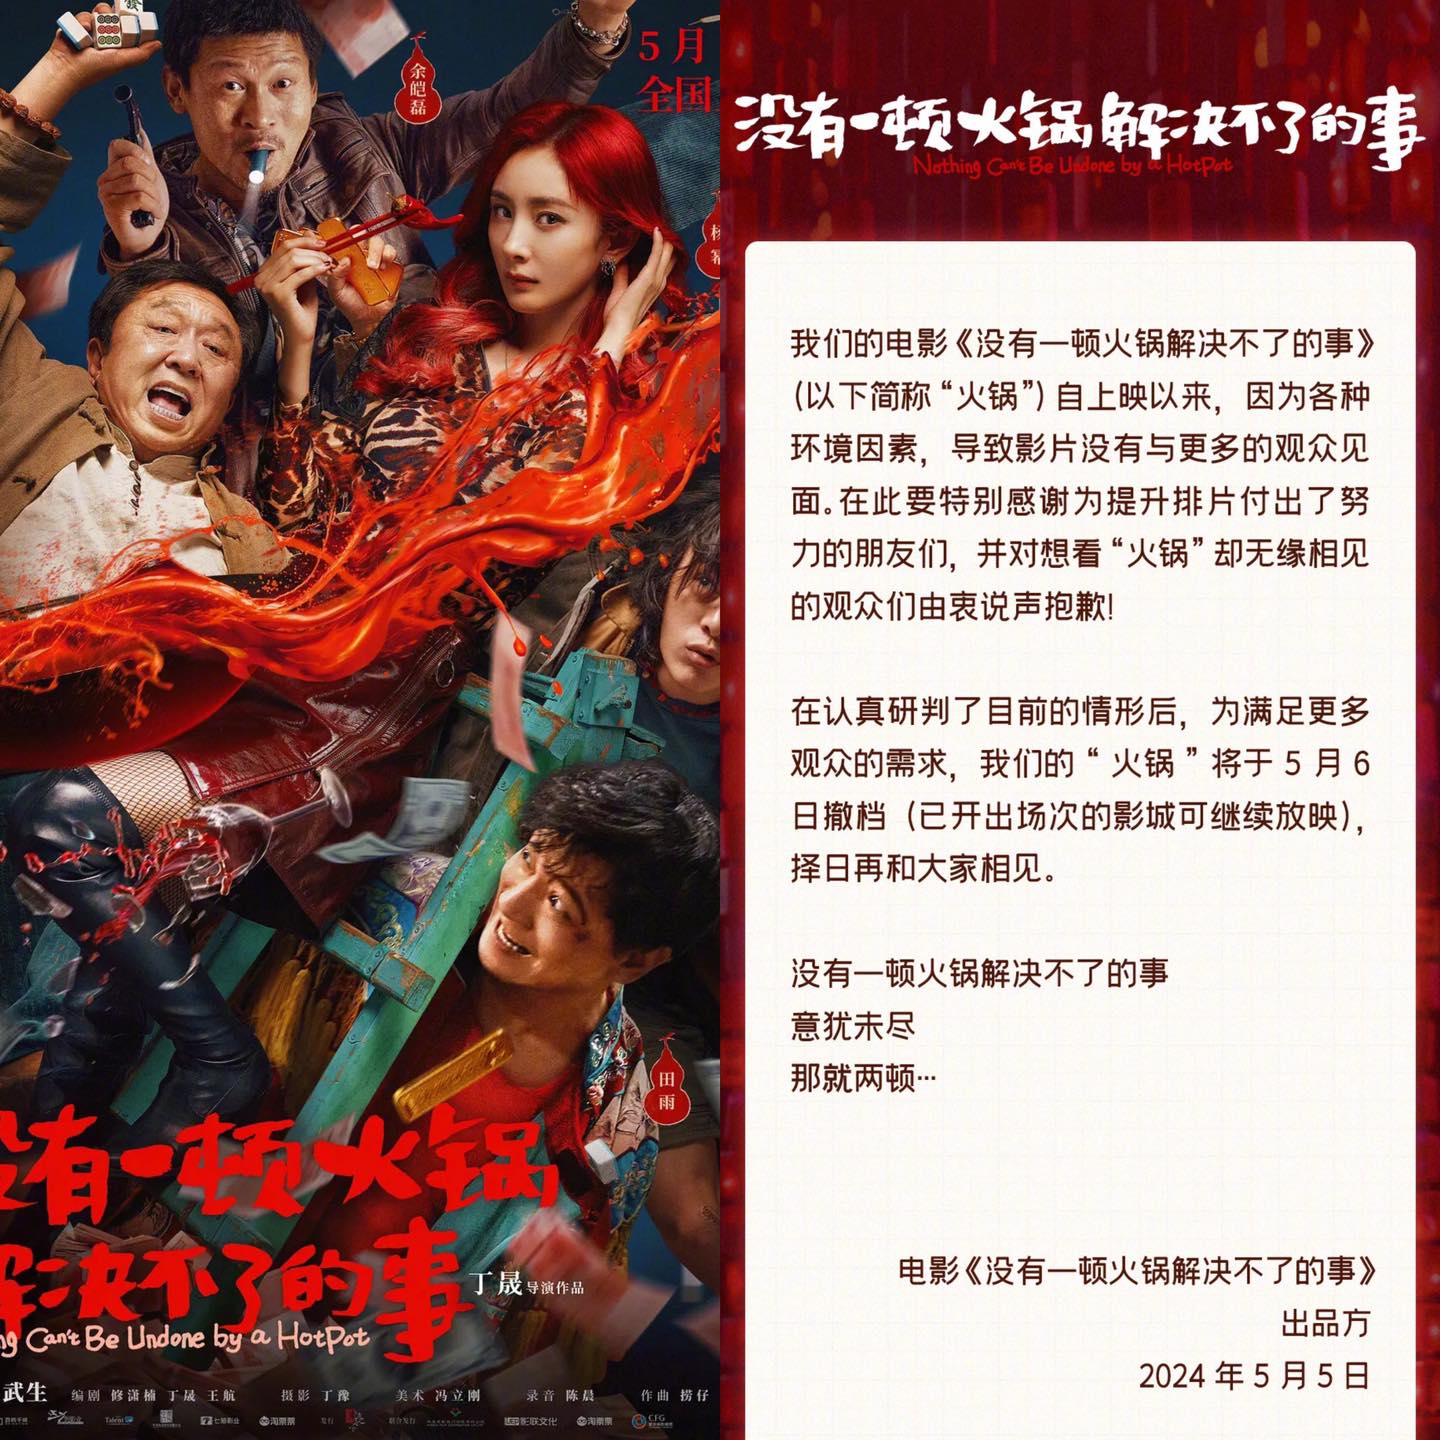 Phim điện ảnh của Dương Mịch tuyên bố rút khỏi rạp chiếu, 2 lần thất bại liên tiếp trên màn ảnh - Ảnh 1